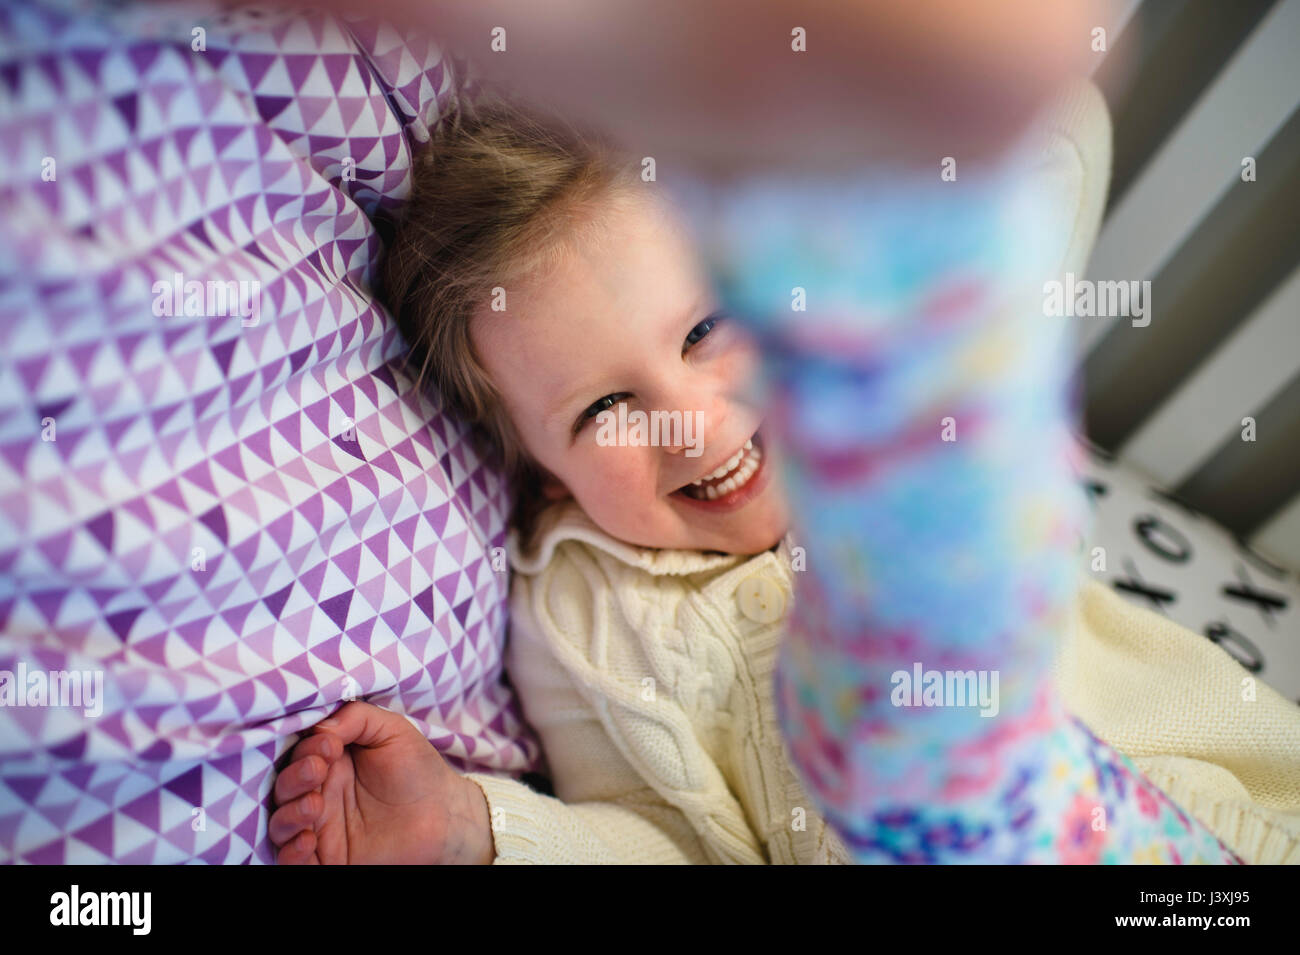 Girl laughing en jouant sur lit de jour Banque D'Images